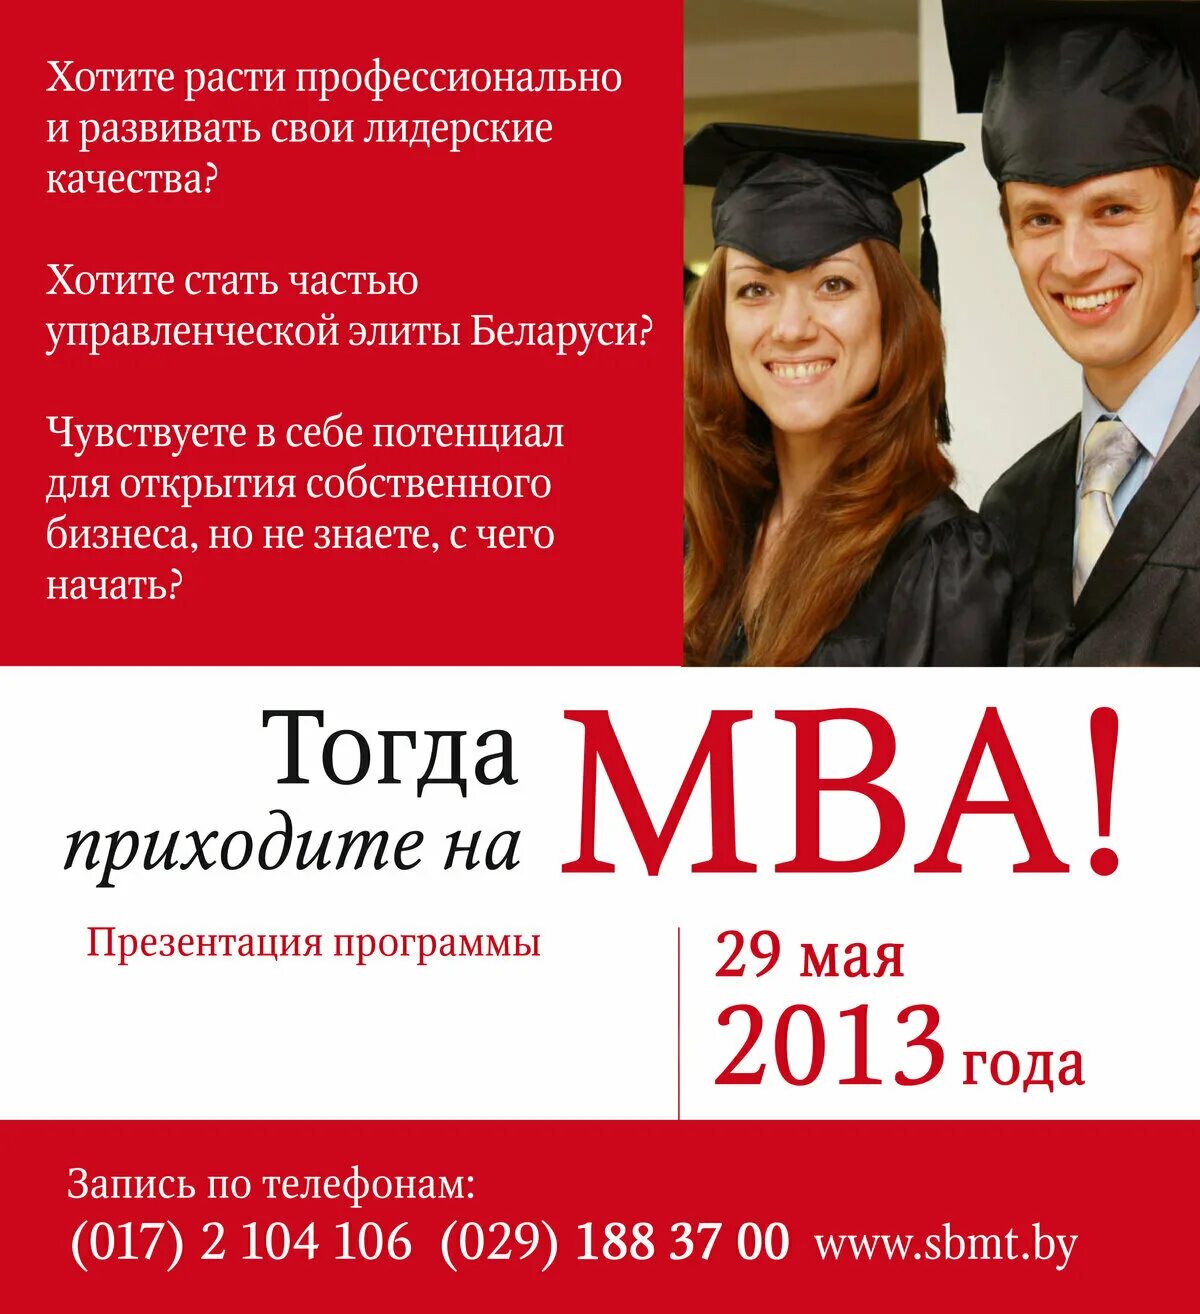 Программа MBA. Курсы MBA. MBA образование. MBA программа обучения что это.